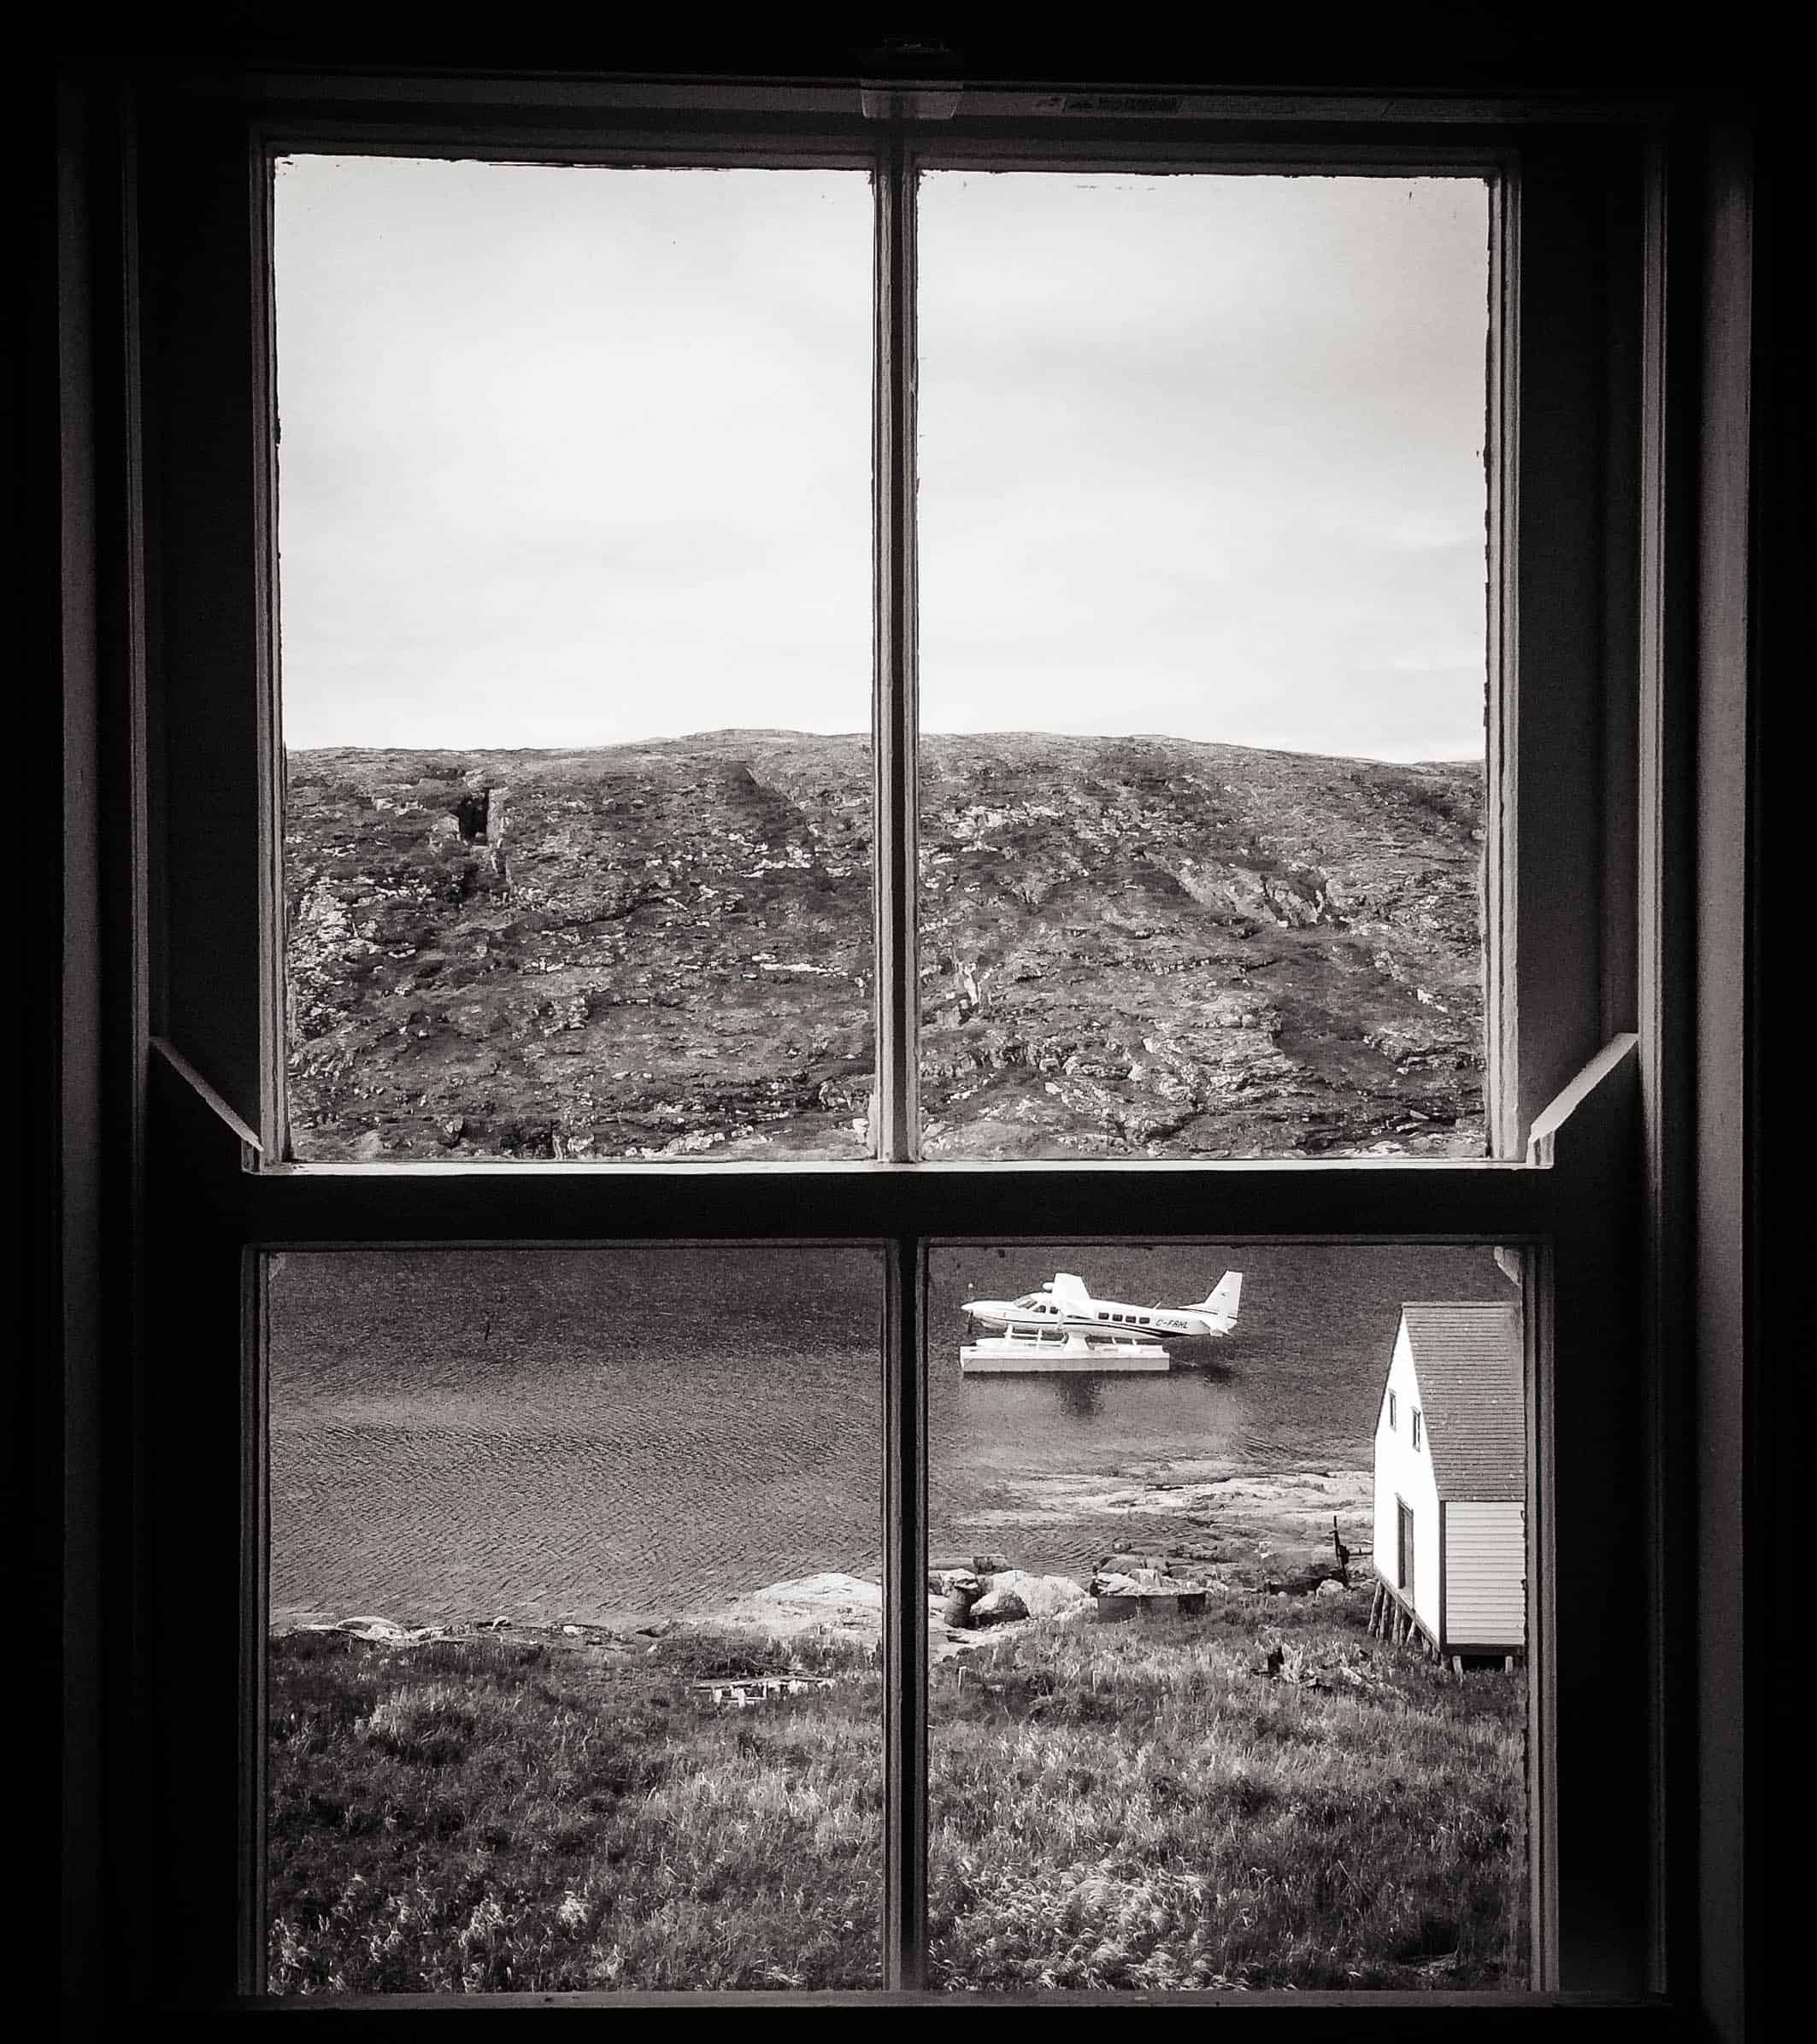 Schwarz-weiß-Foto aus einem Fenster auf ein Wasserflugzeug in Kanada